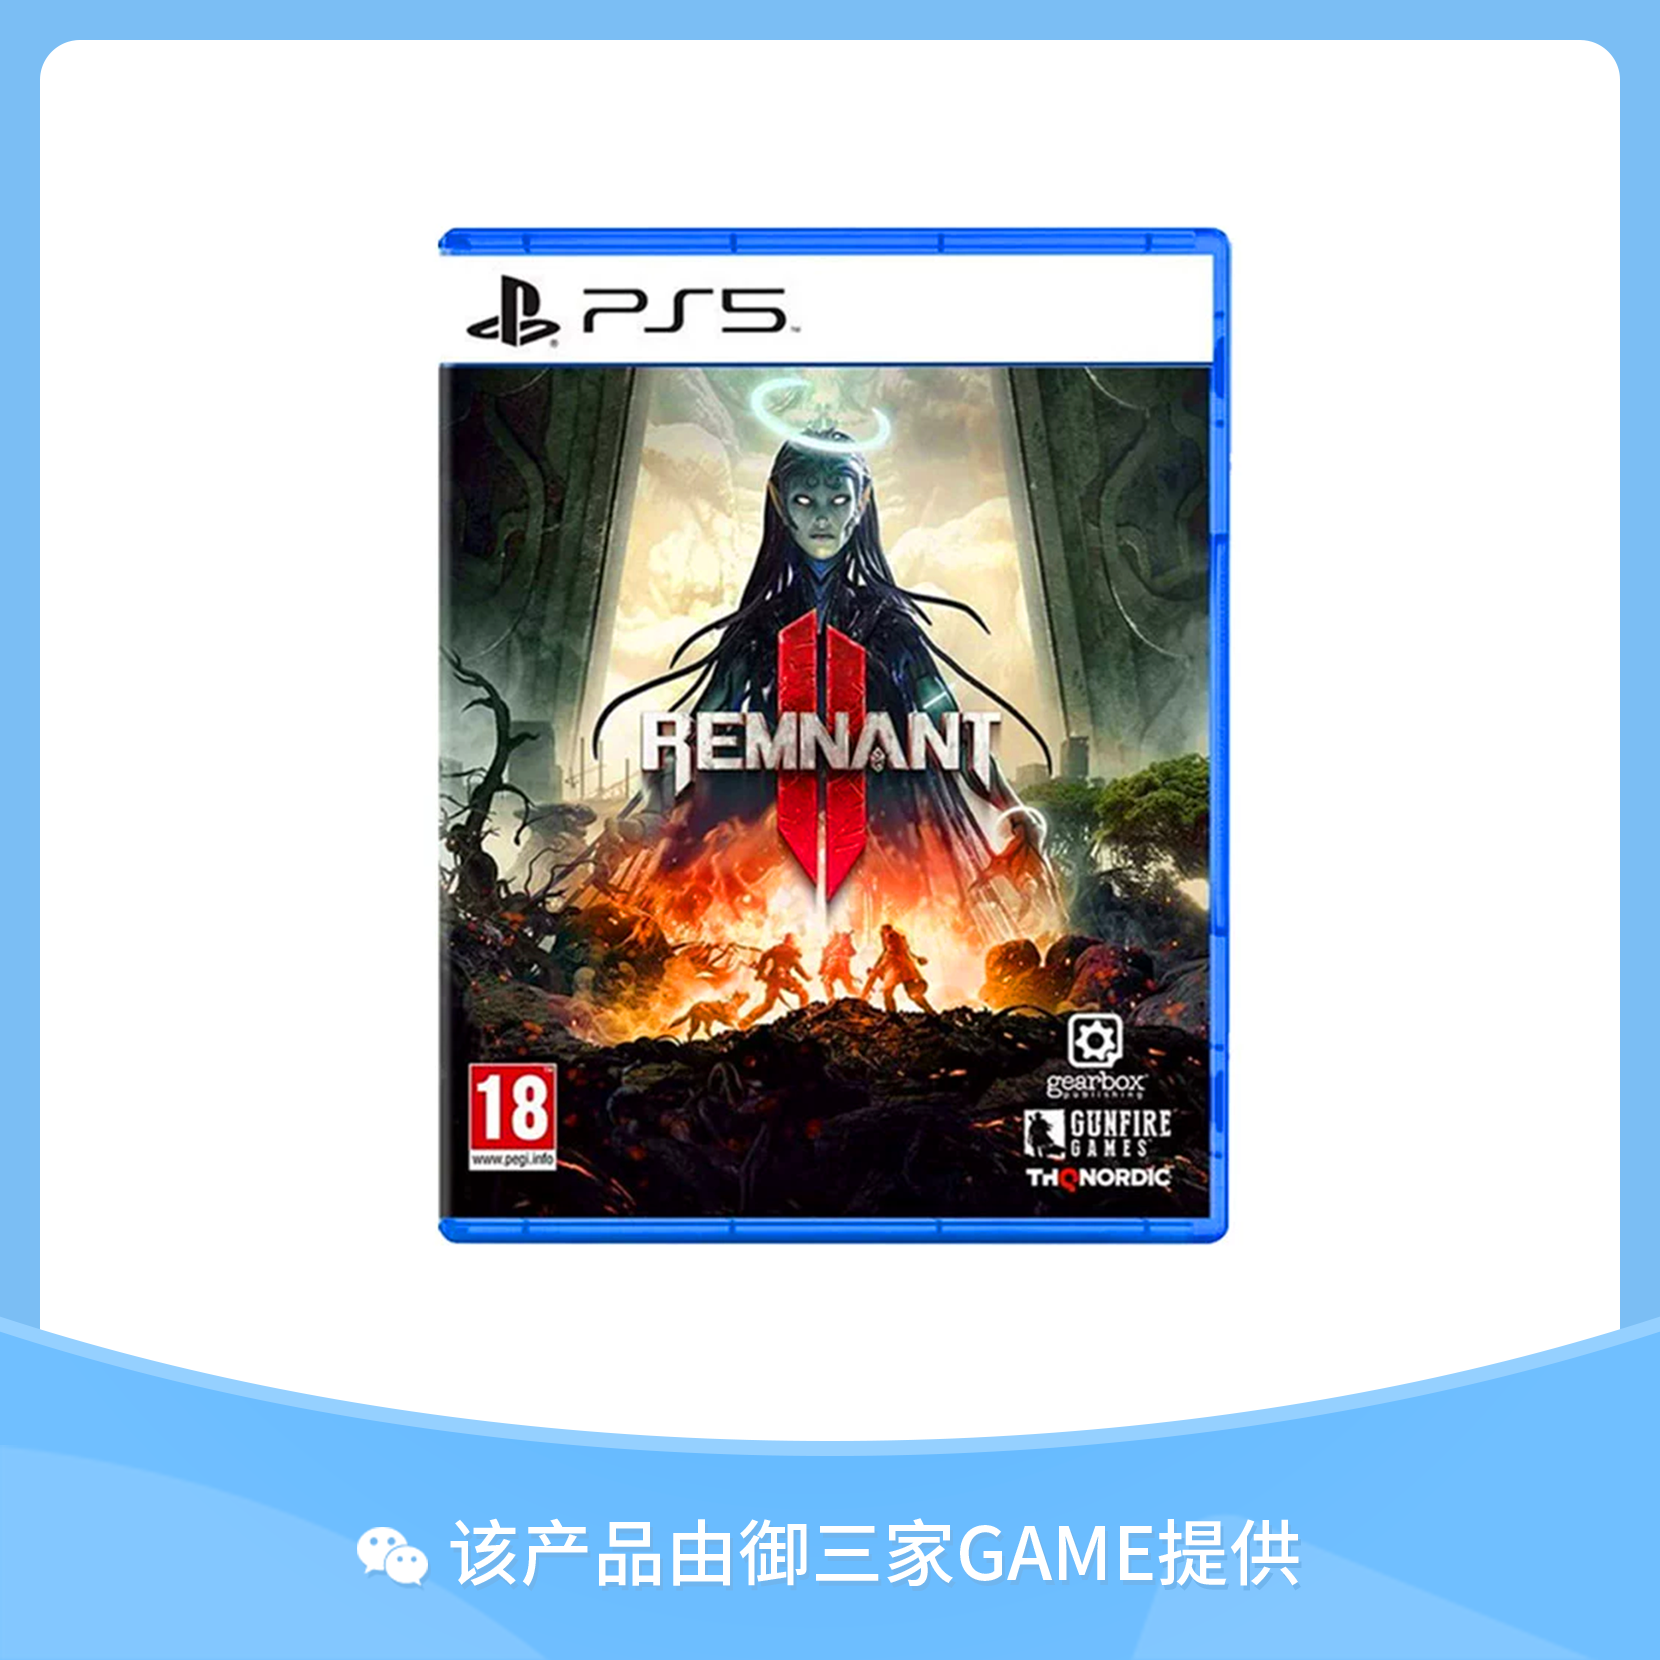 索尼PS5游戏 遗迹2 需全程联网 中文